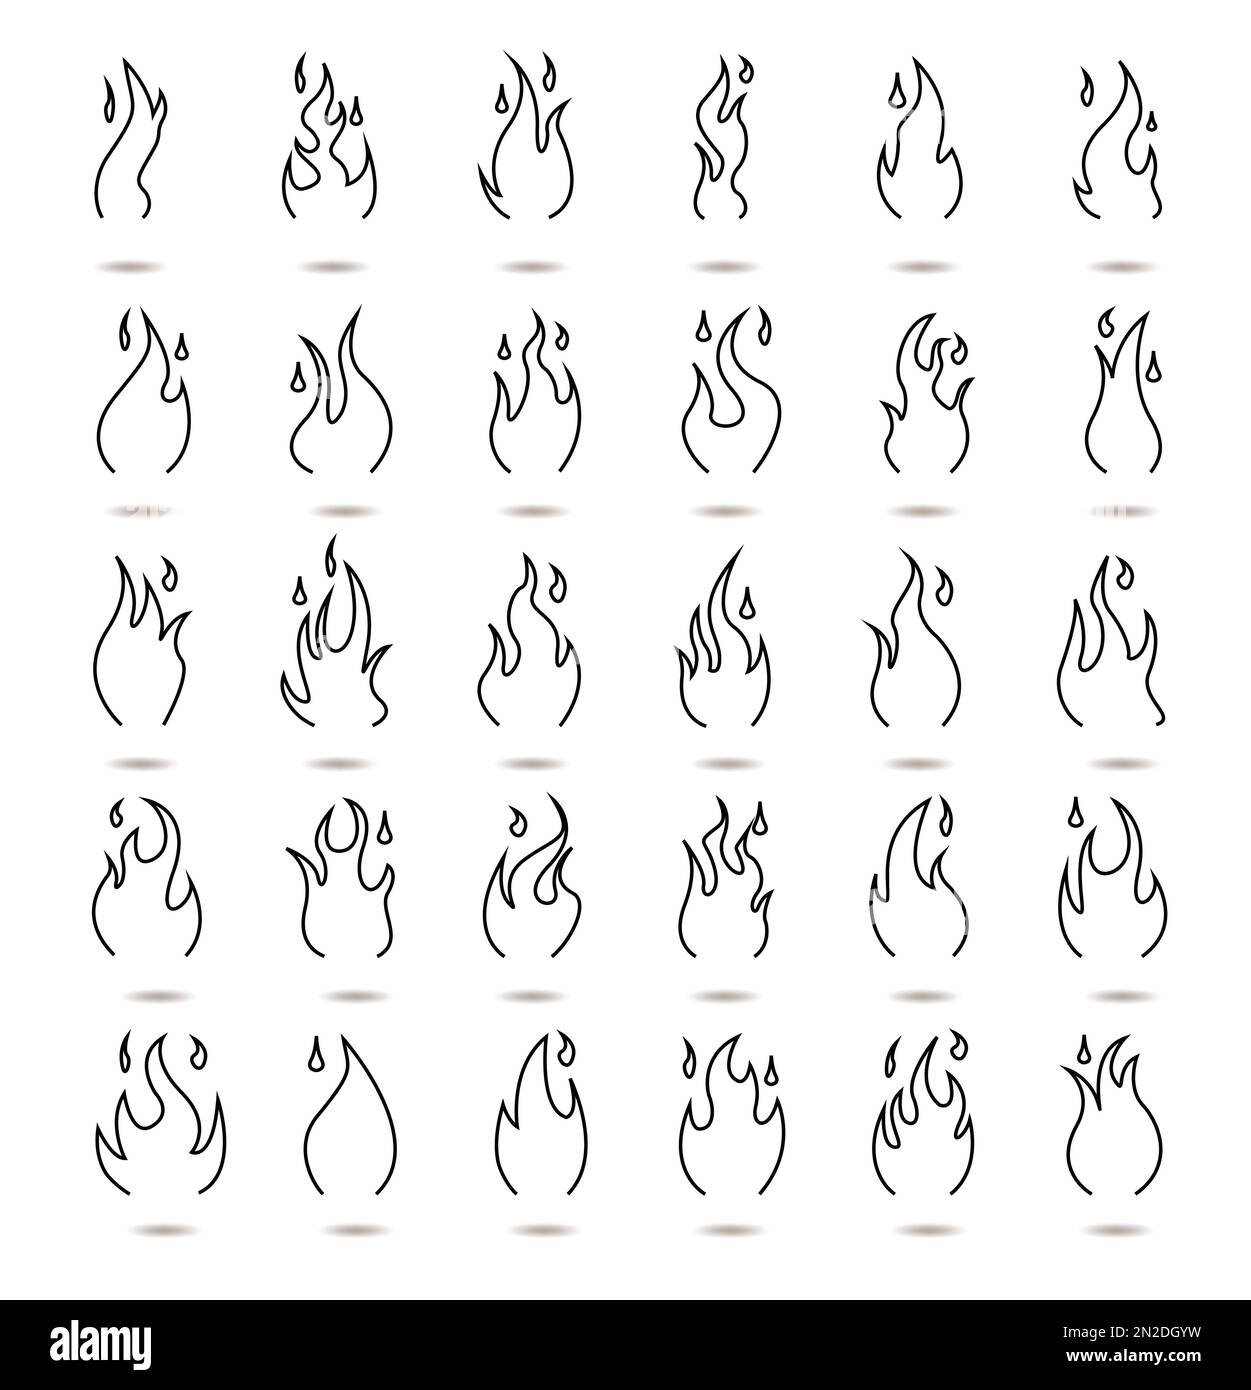 Dessin au trait logo de flamme de feu, icônes de couleur noire illustration vectorielle isolée sur fond blanc. Illustration de Vecteur